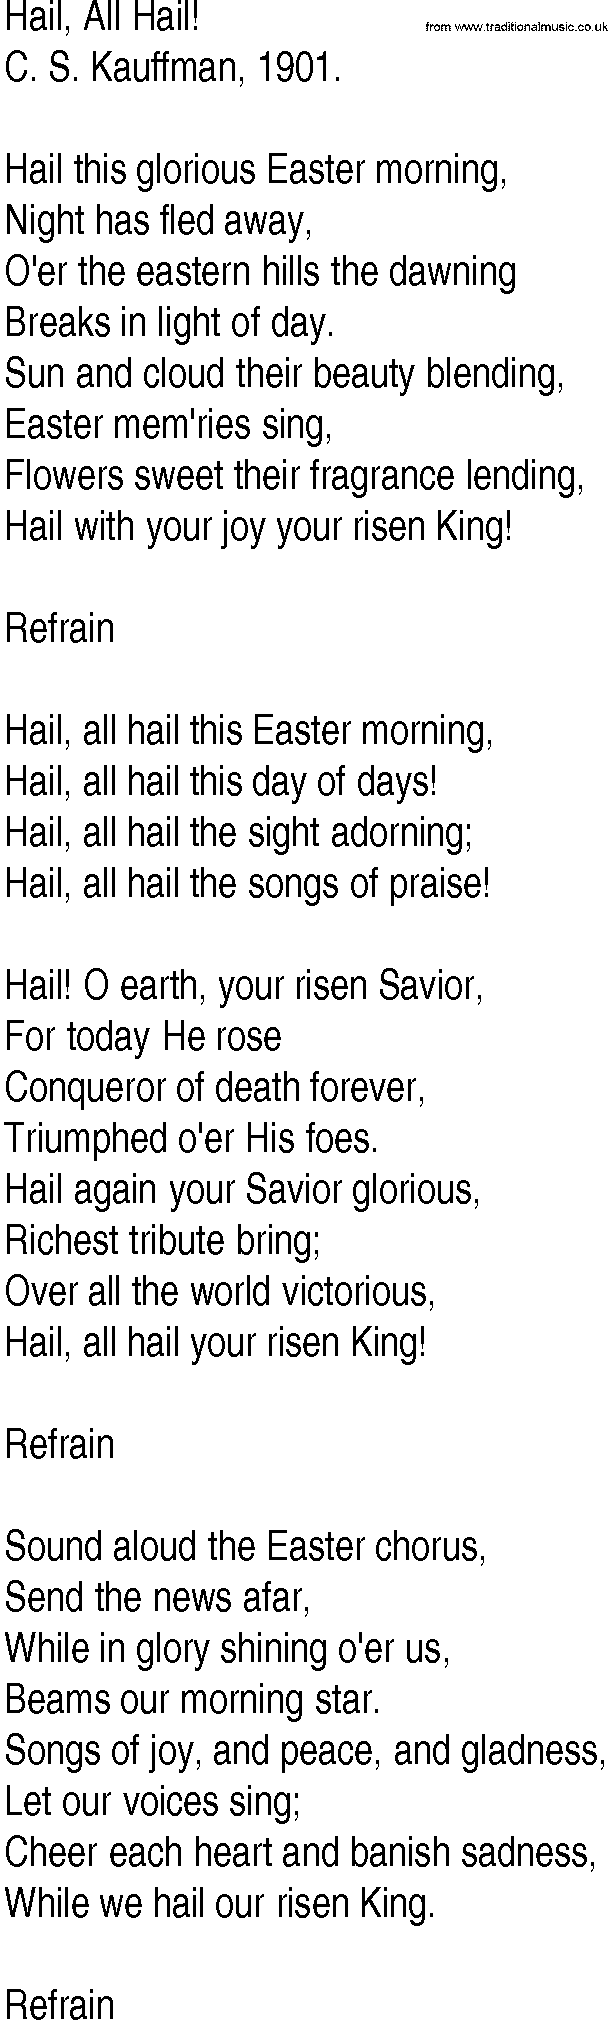 Hymn and Gospel Song: Hail, All Hail! by C S Kauffman lyrics